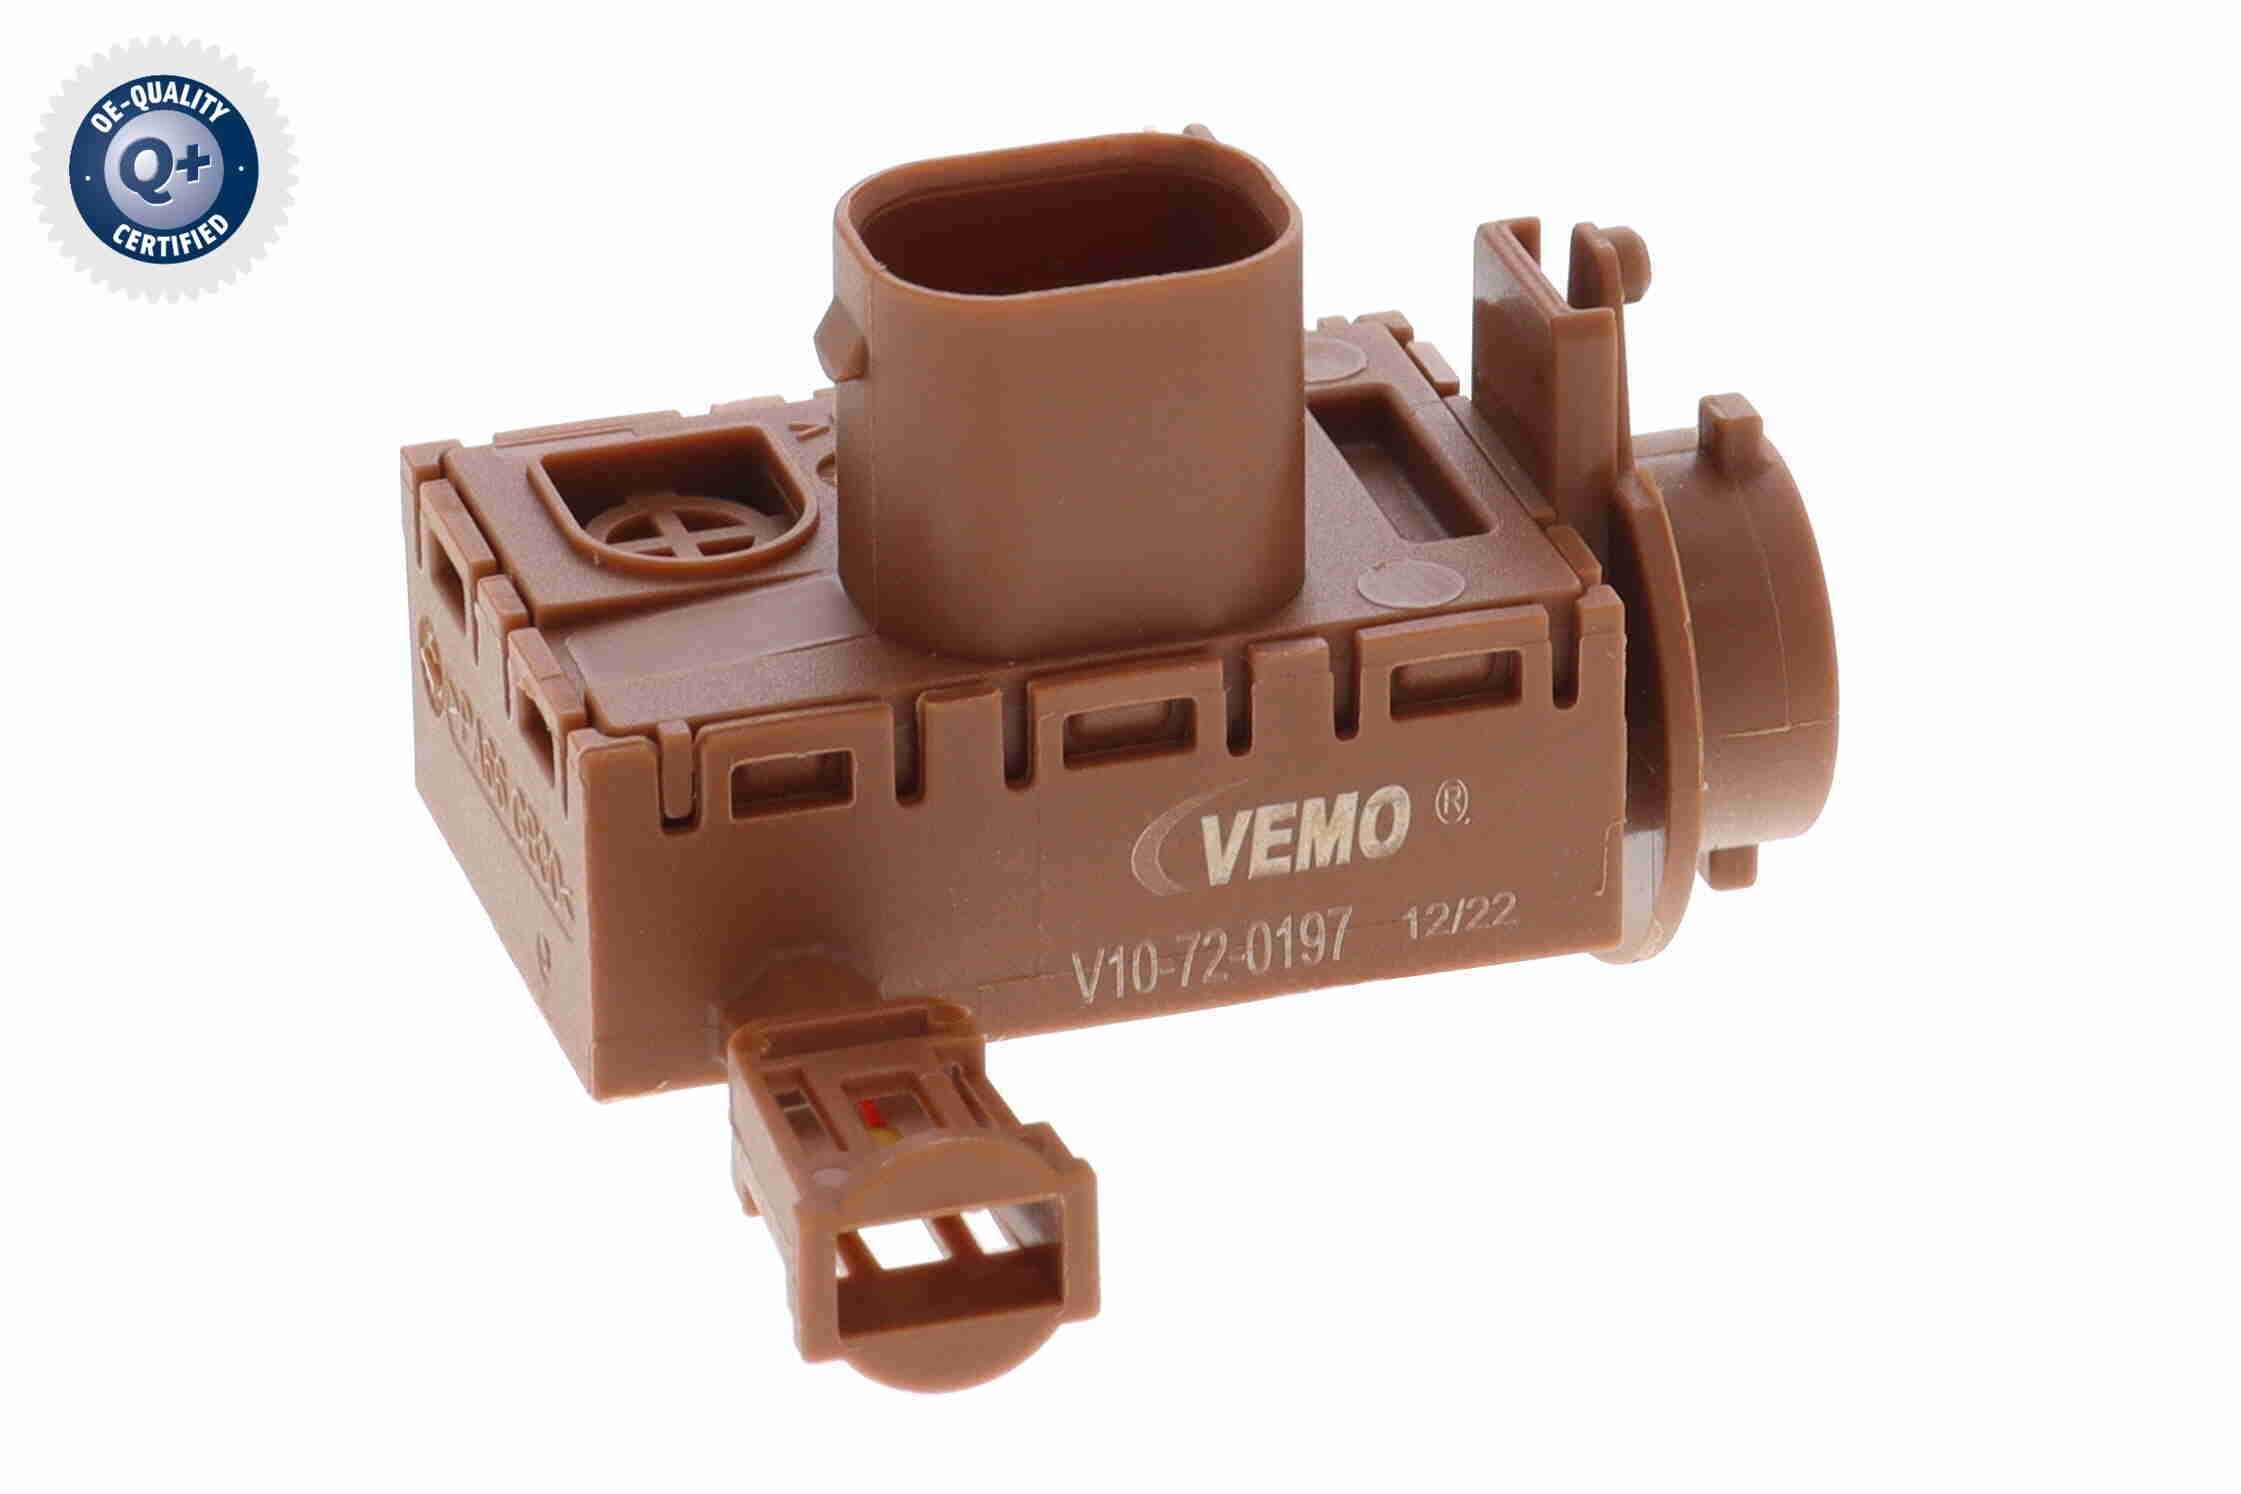 VEMO V10-72-0197 RENAULT Air quality sensor in original quality